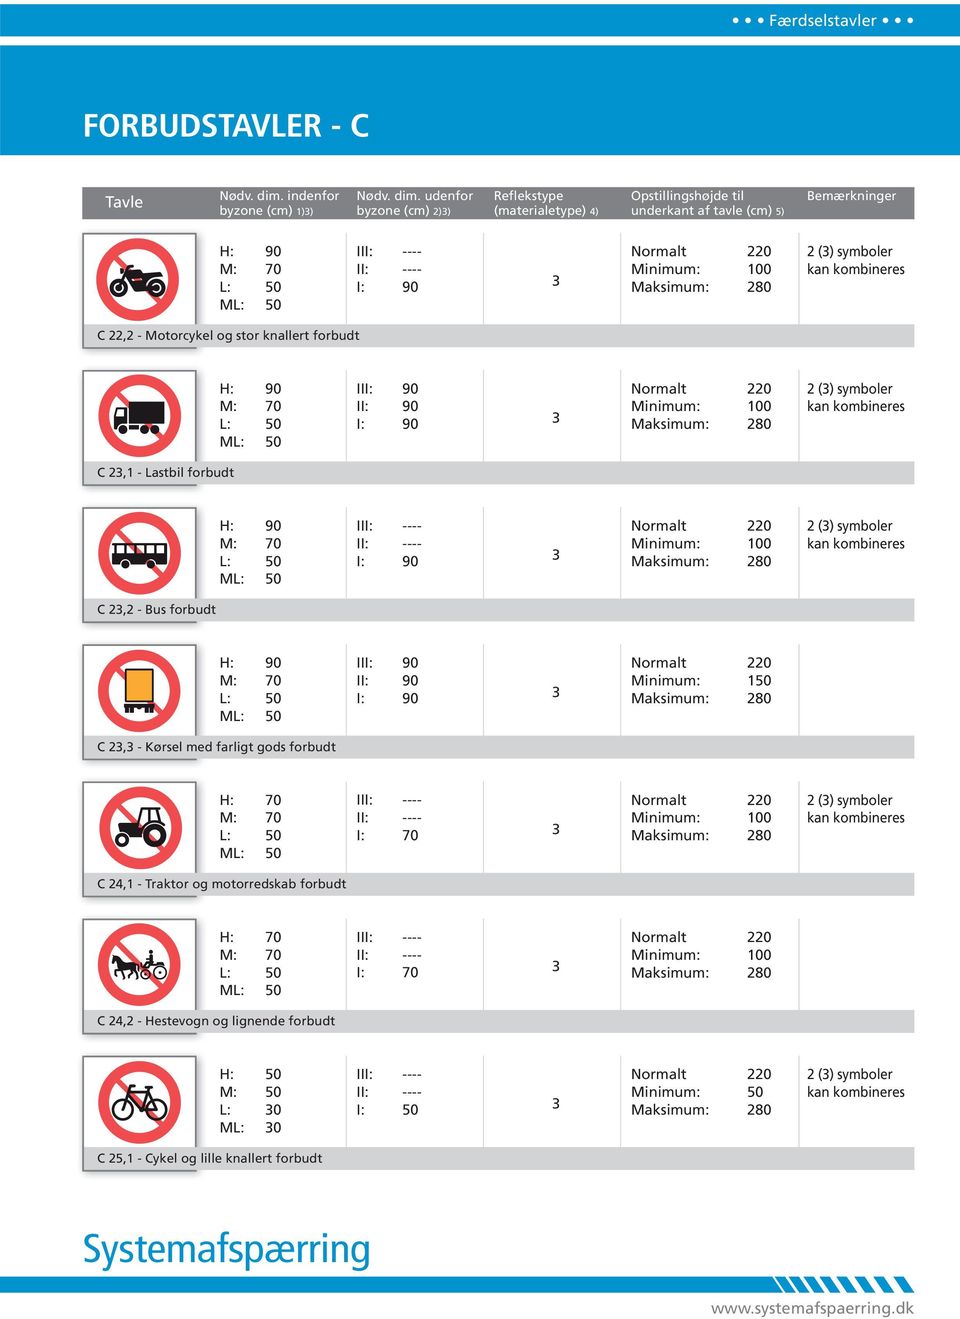 2,2 - Bus forbudt I C 2, - Kørsel med farligt gods forbudt Minimum: 100 2 () symboler kan kombineres C 2,1 - Traktor og motorredskab